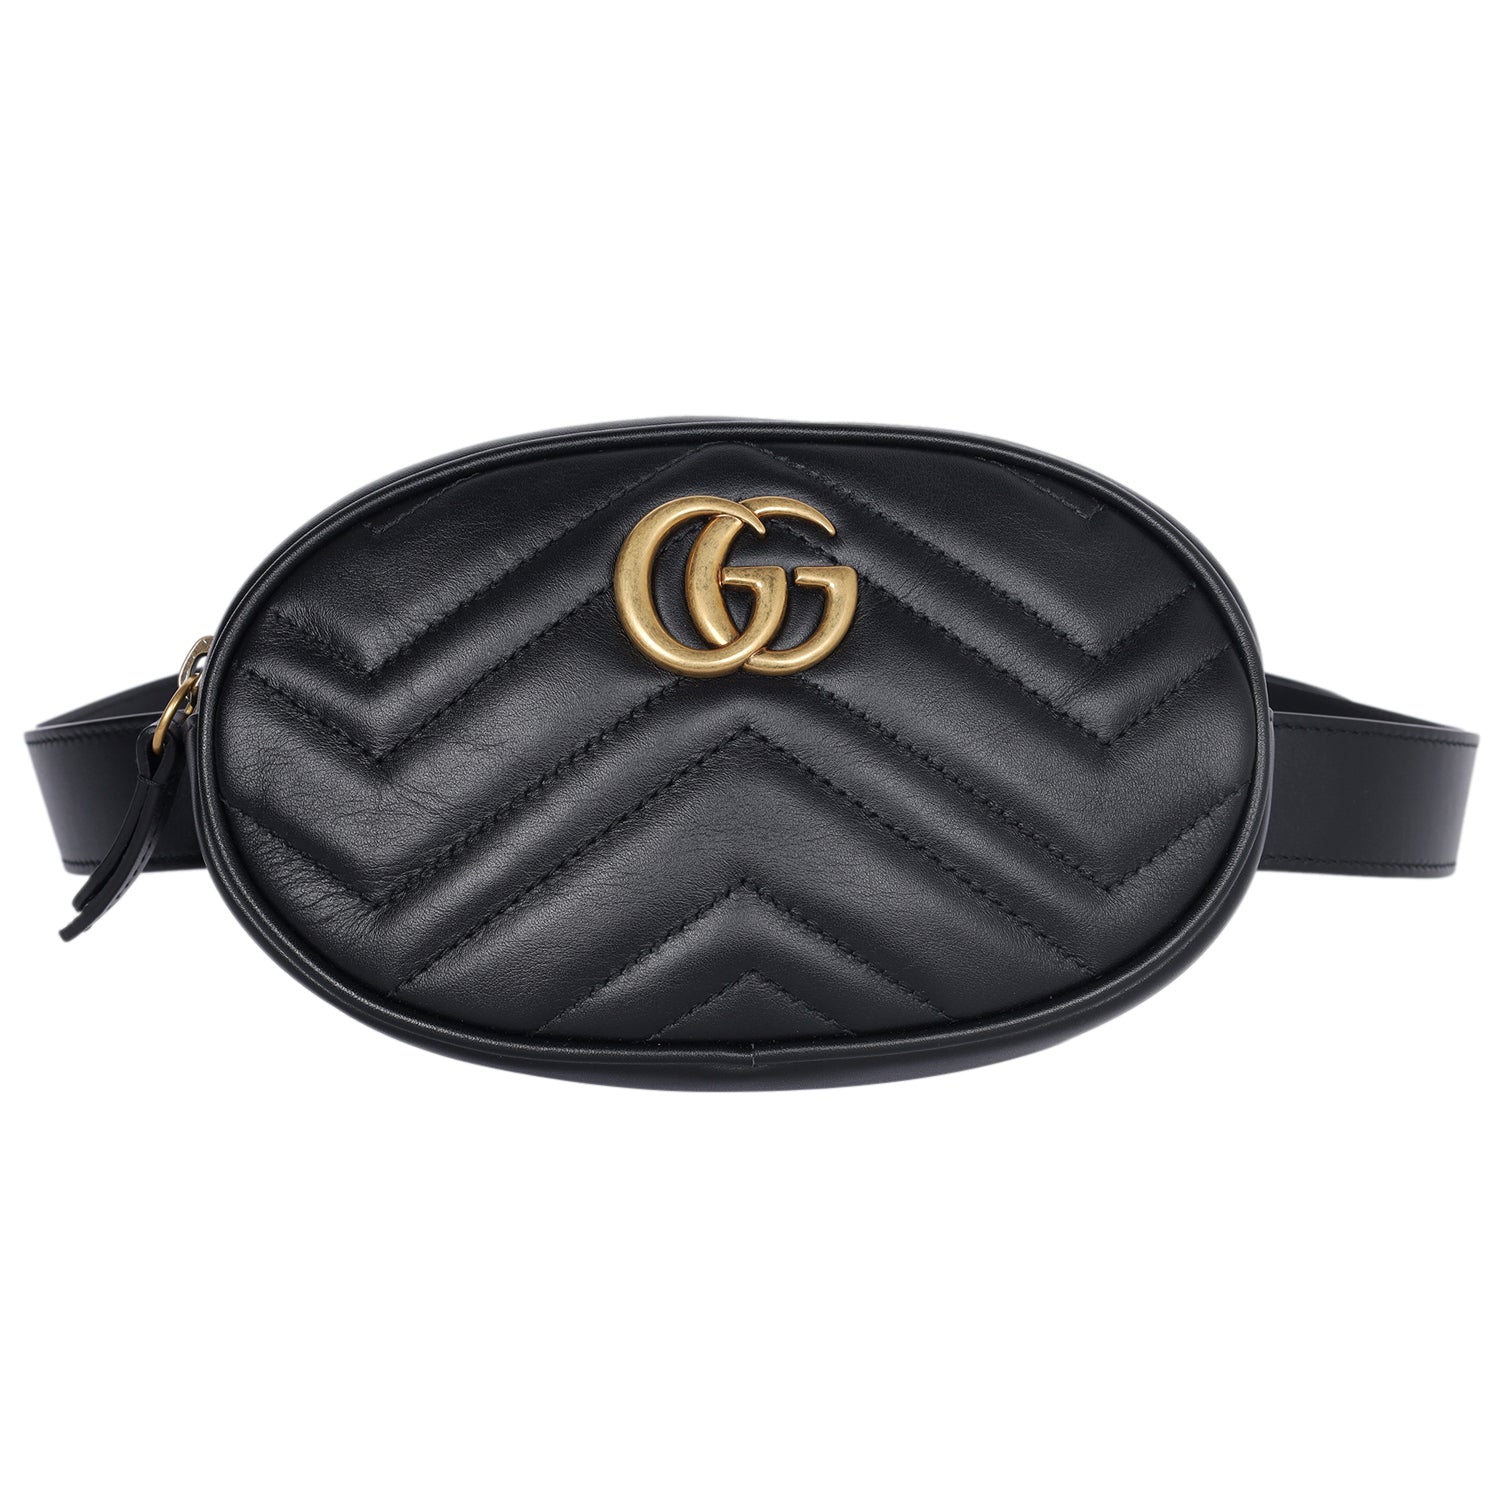 GG Marmont Belt Bag 95 38 Black New) Lady Bag